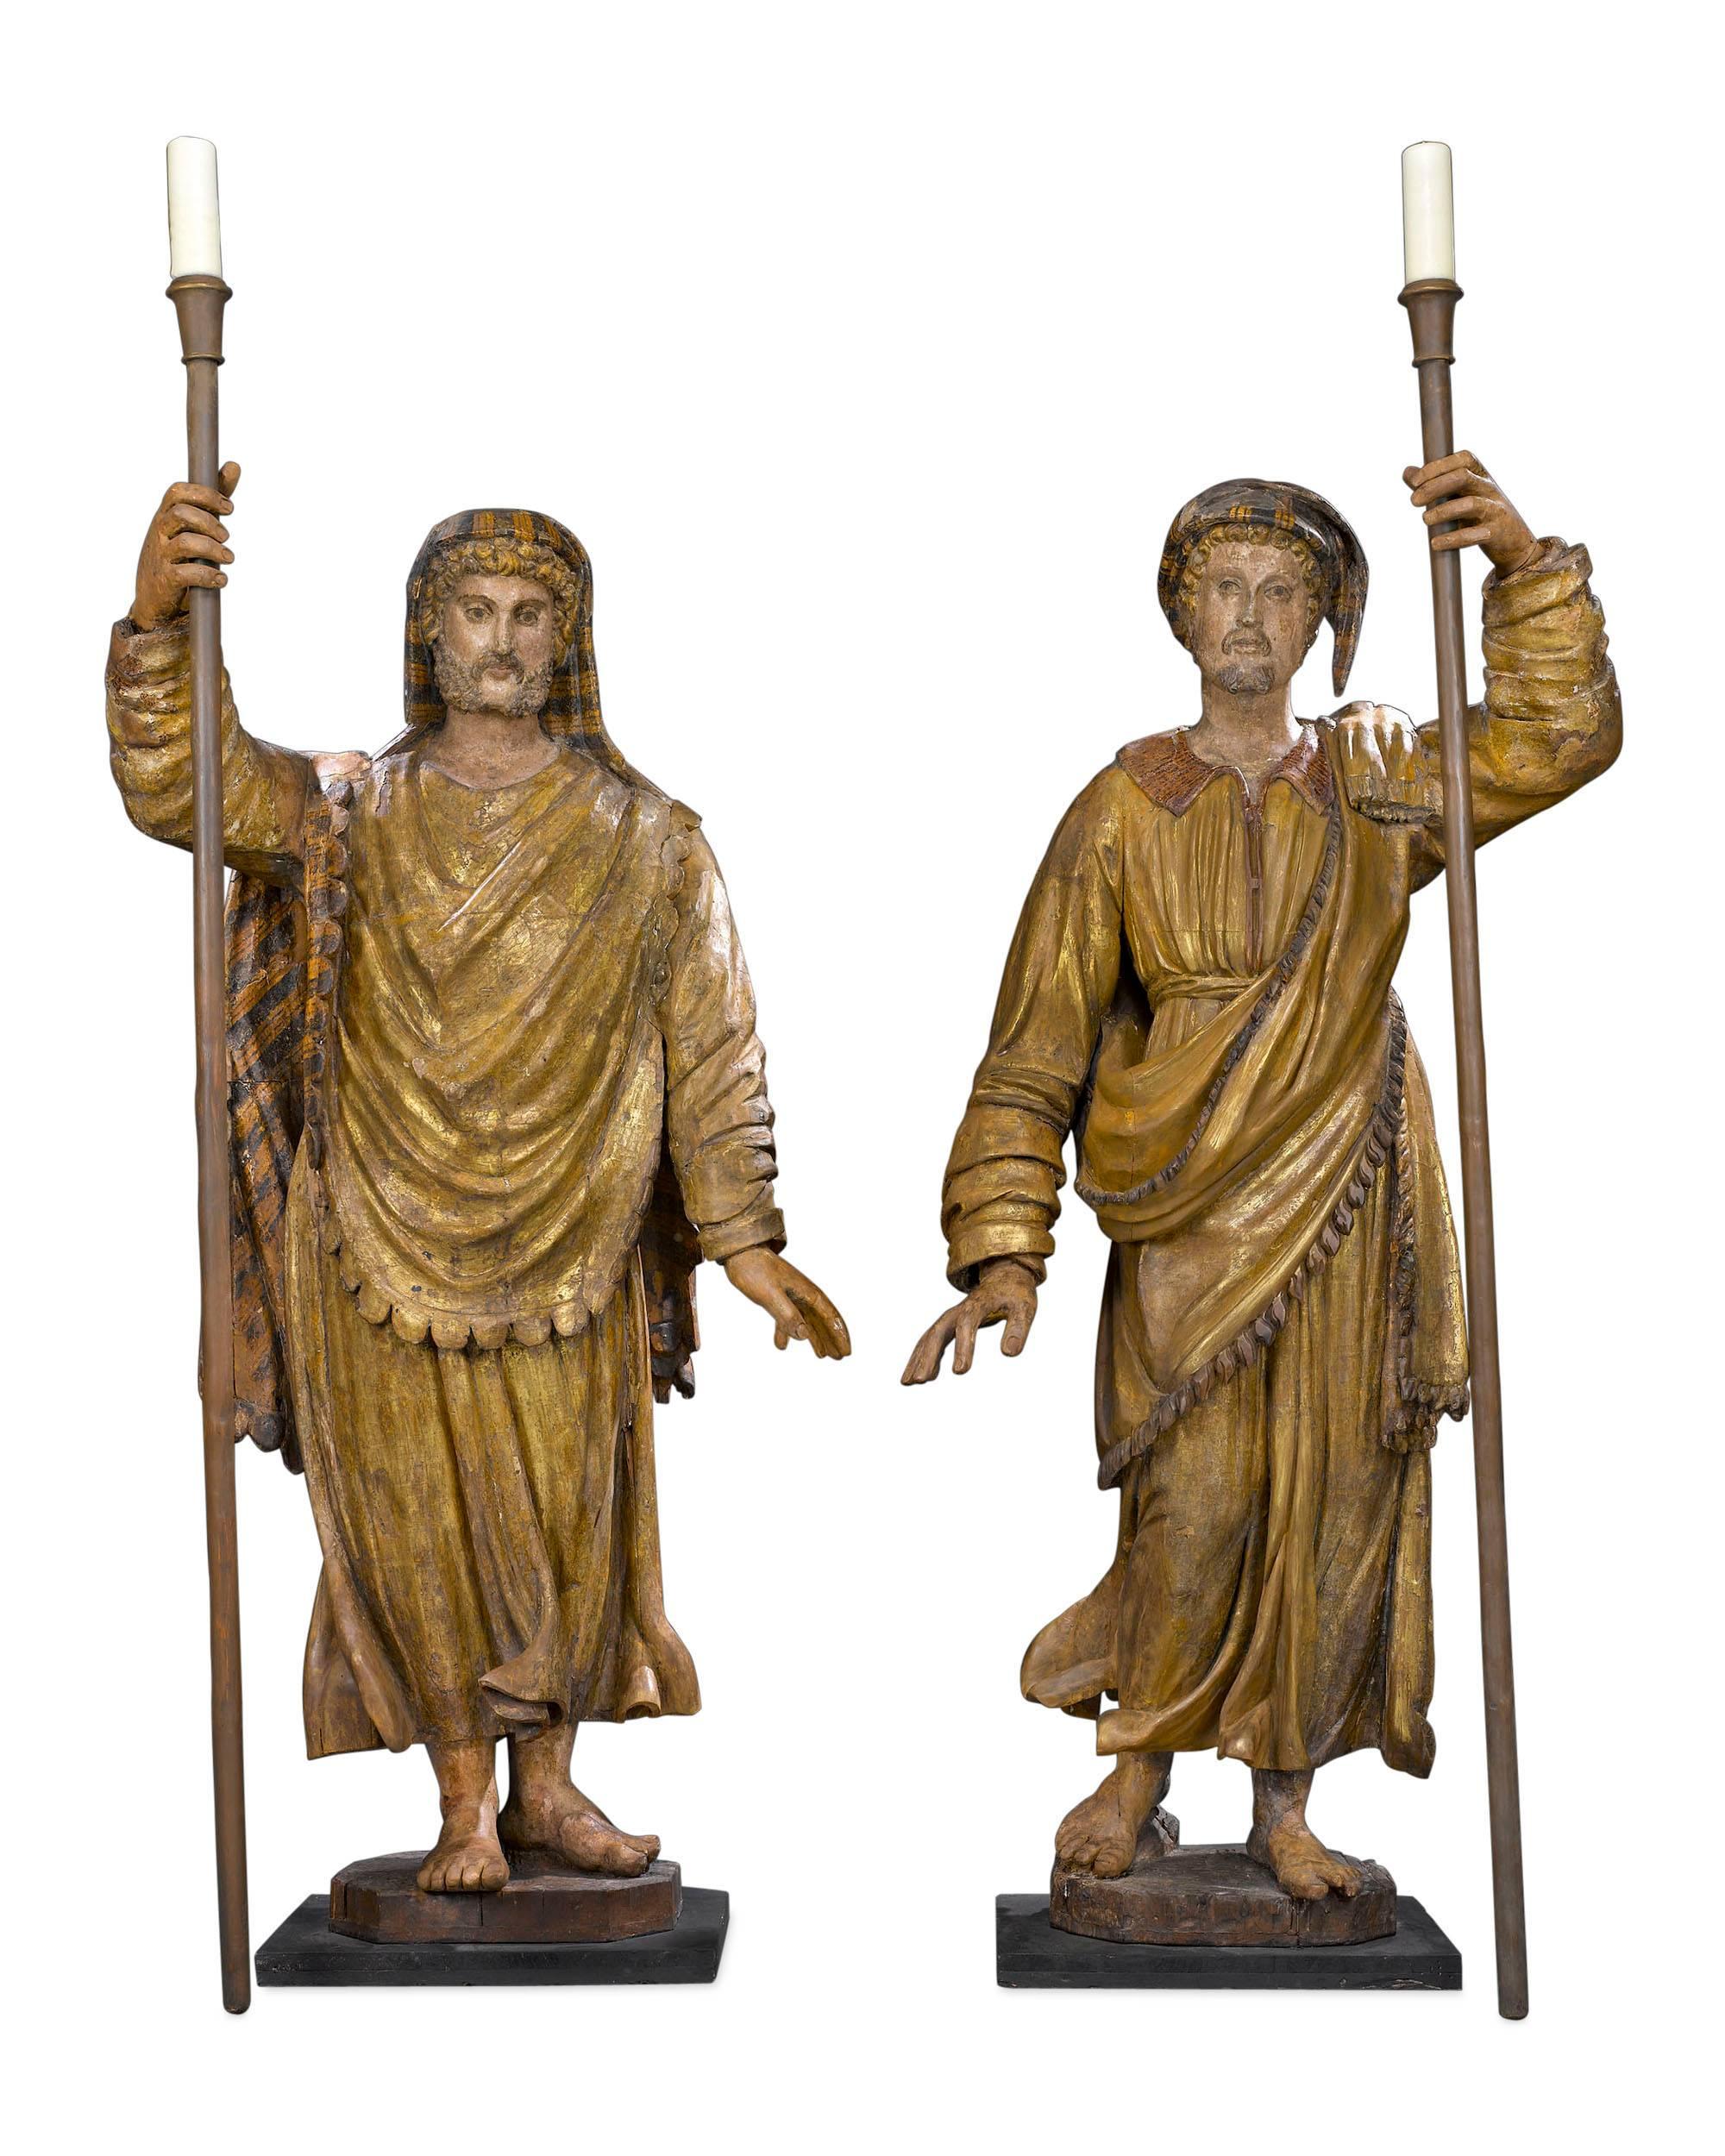 Diese unglaublichen venezianischen Figurenfackeln, die durch ihre Größe und Kunstfertigkeit beeindrucken, sind eine Hommage an zwei der berühmtesten Entdecker Italiens: Marco Polo und Amerigo Vespucci.

Diese beeindruckenden, über drei Meter hohen